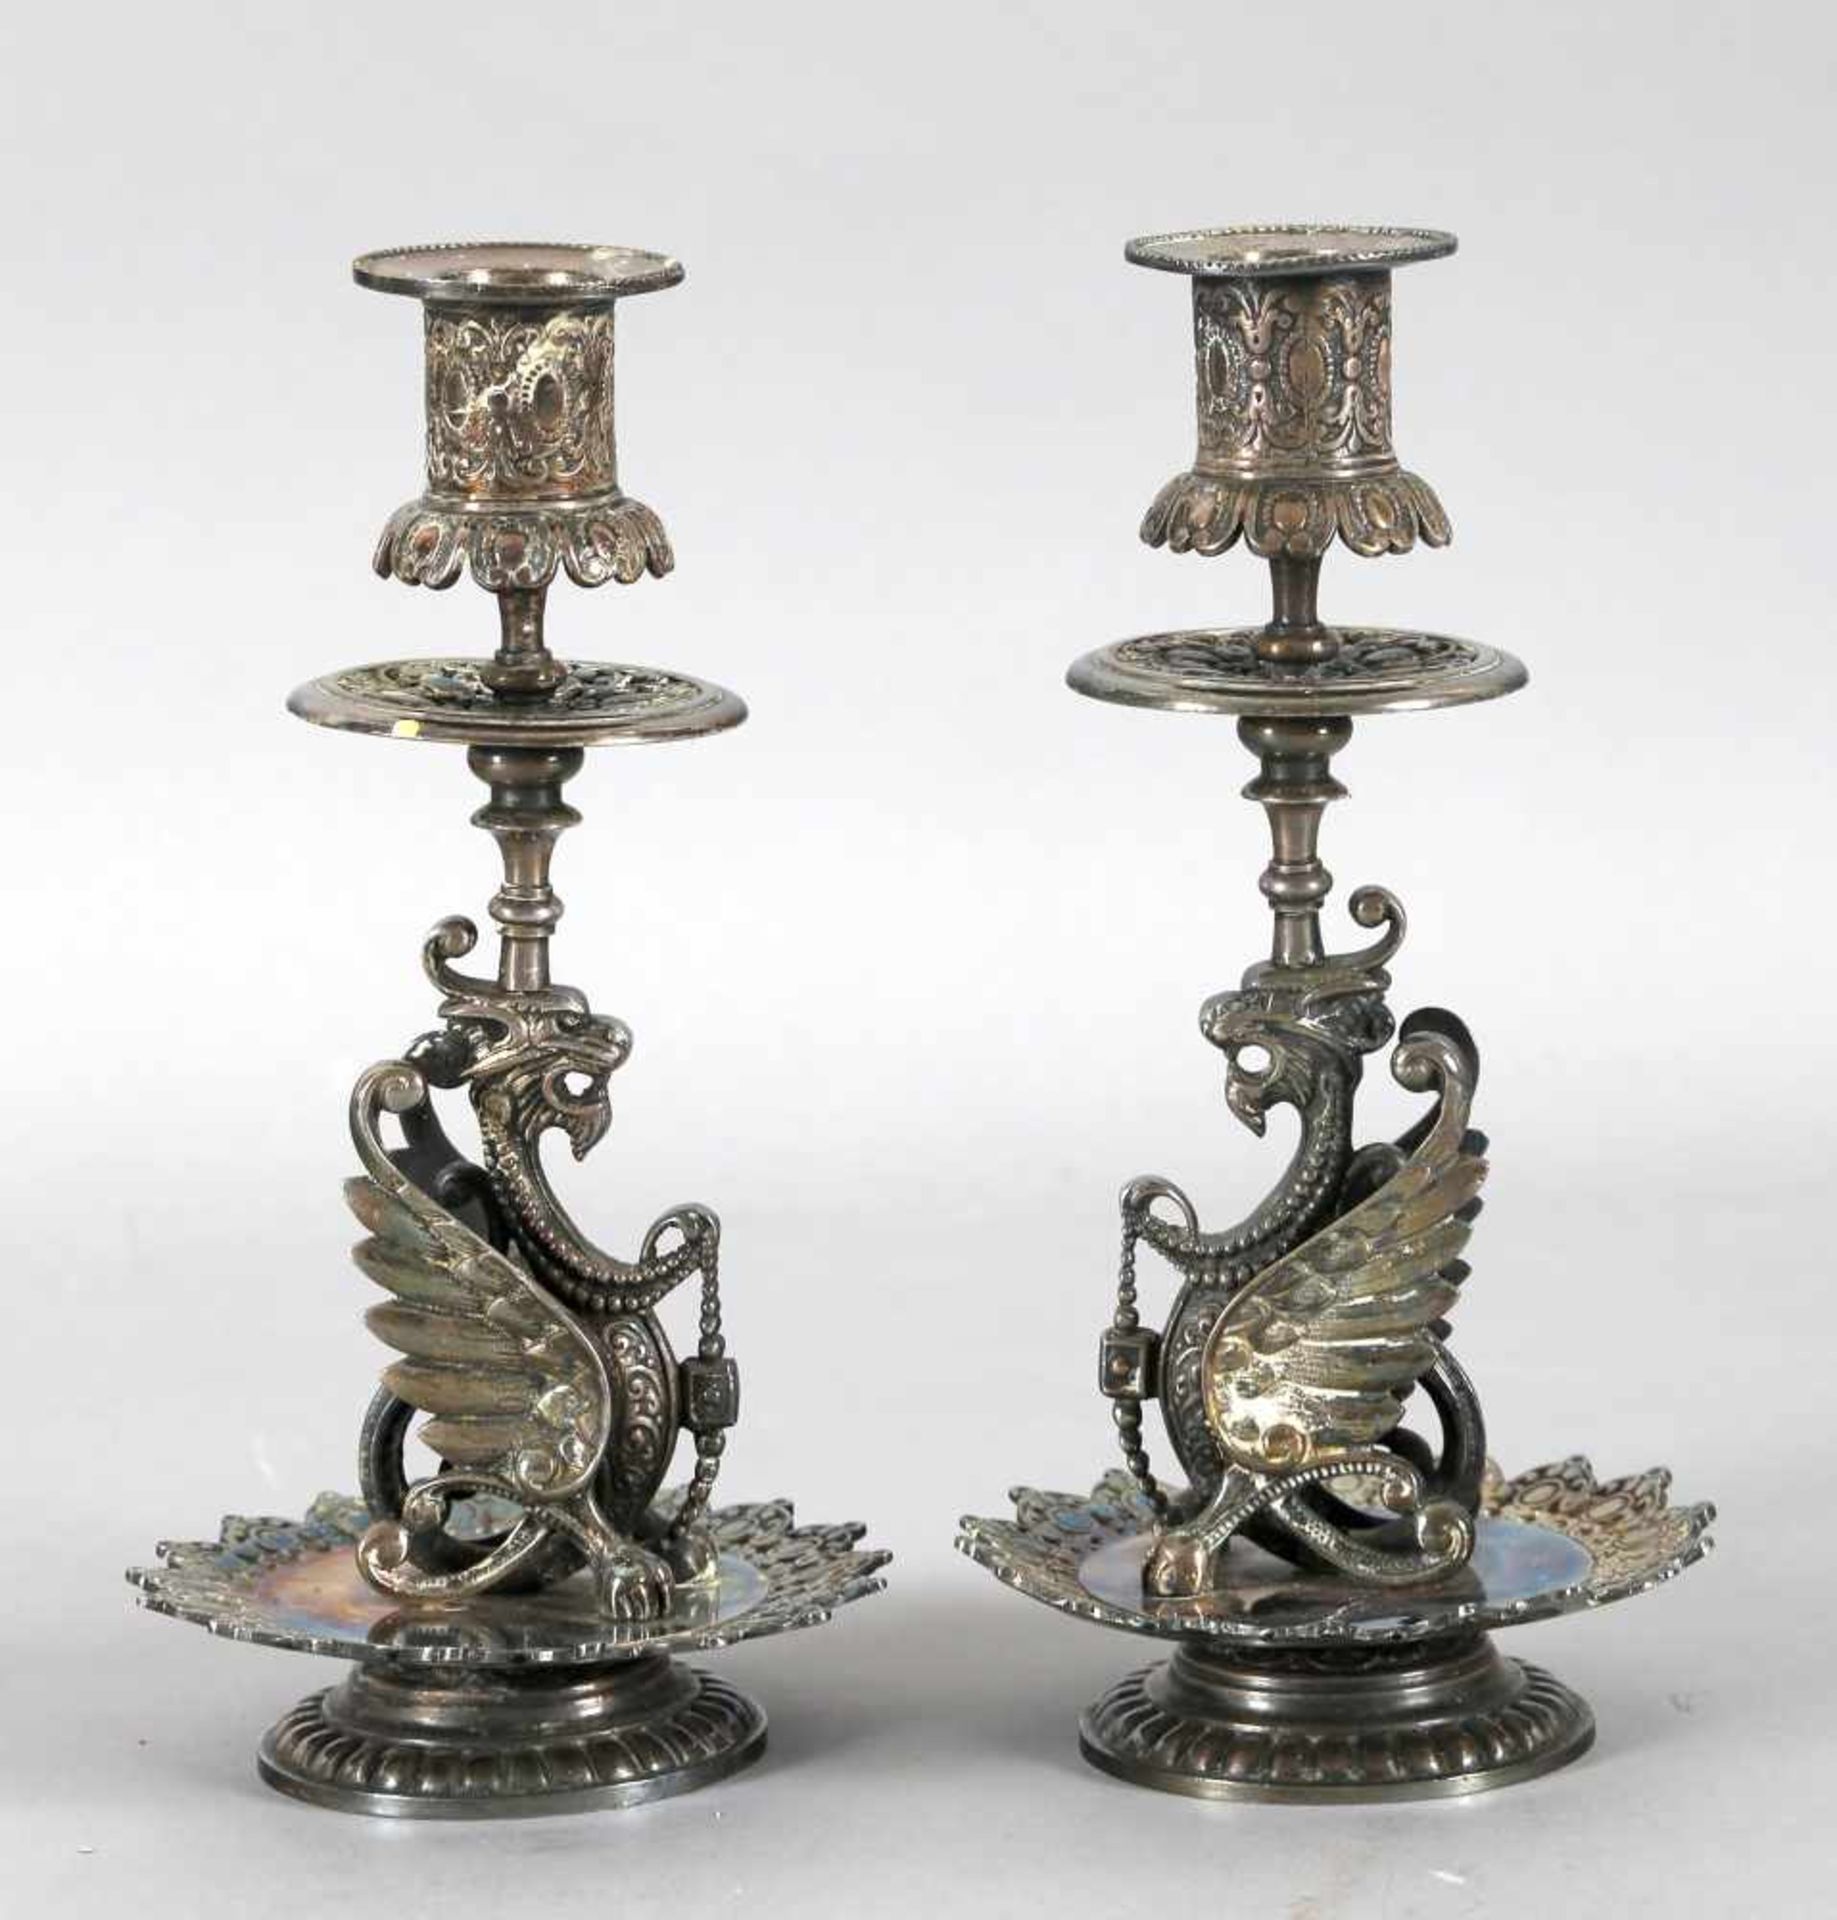 Paar Kerzenleuchter, wohl versilbert, 1860-80auf rundem Fuß eine Chimäre, darüber eine weitere Ebene